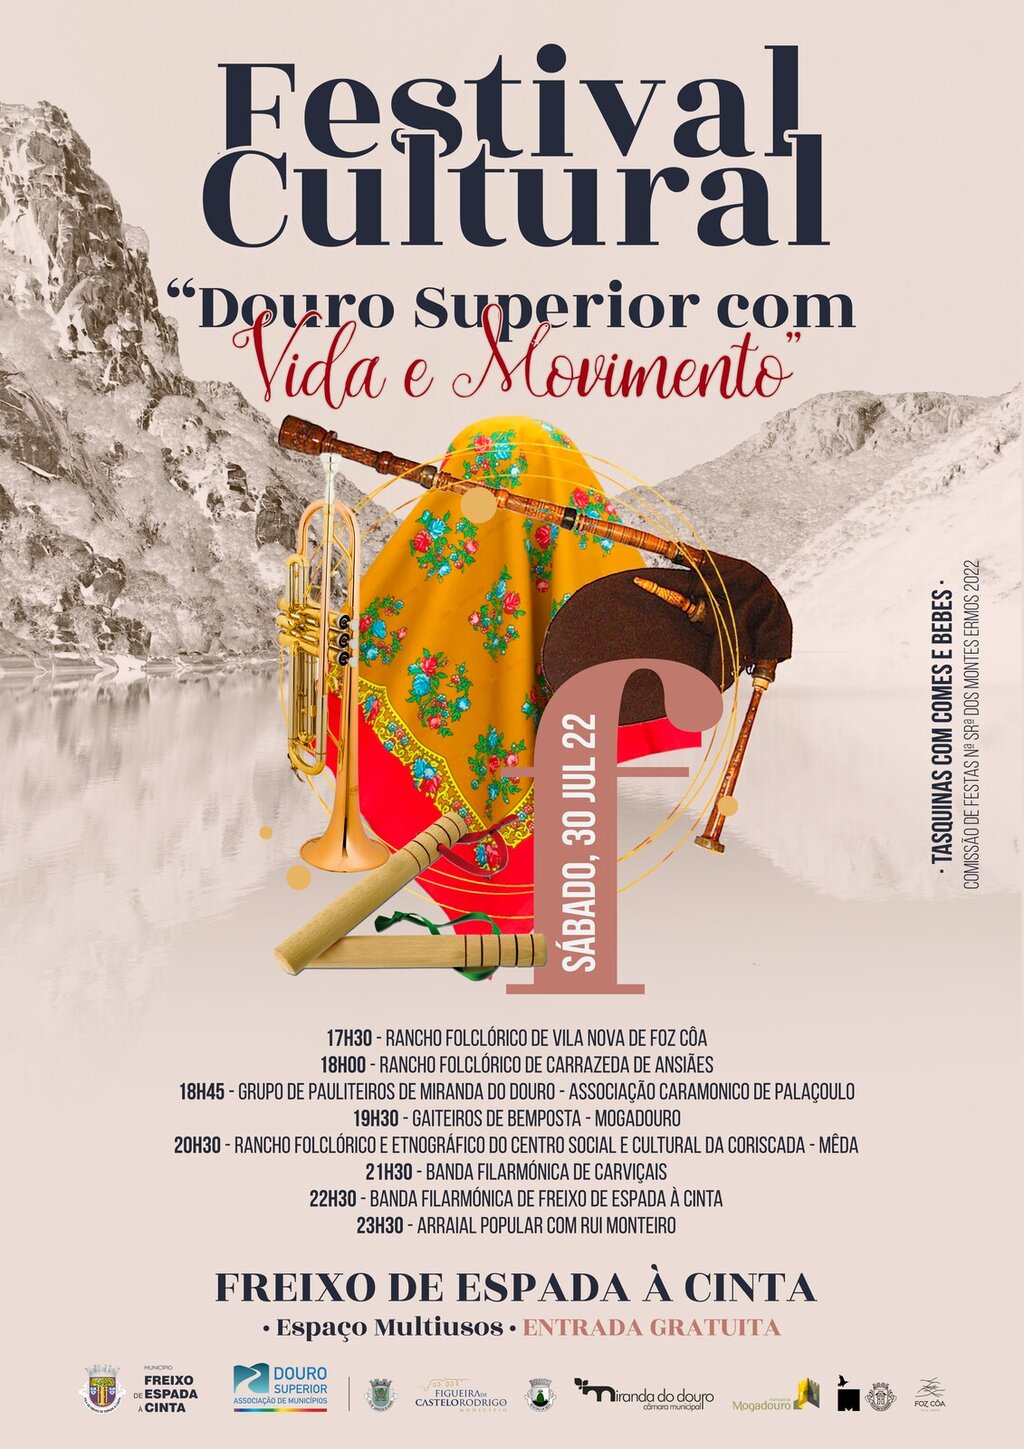 Festival Cultural "Douro Superior com Vida e Movimento" 